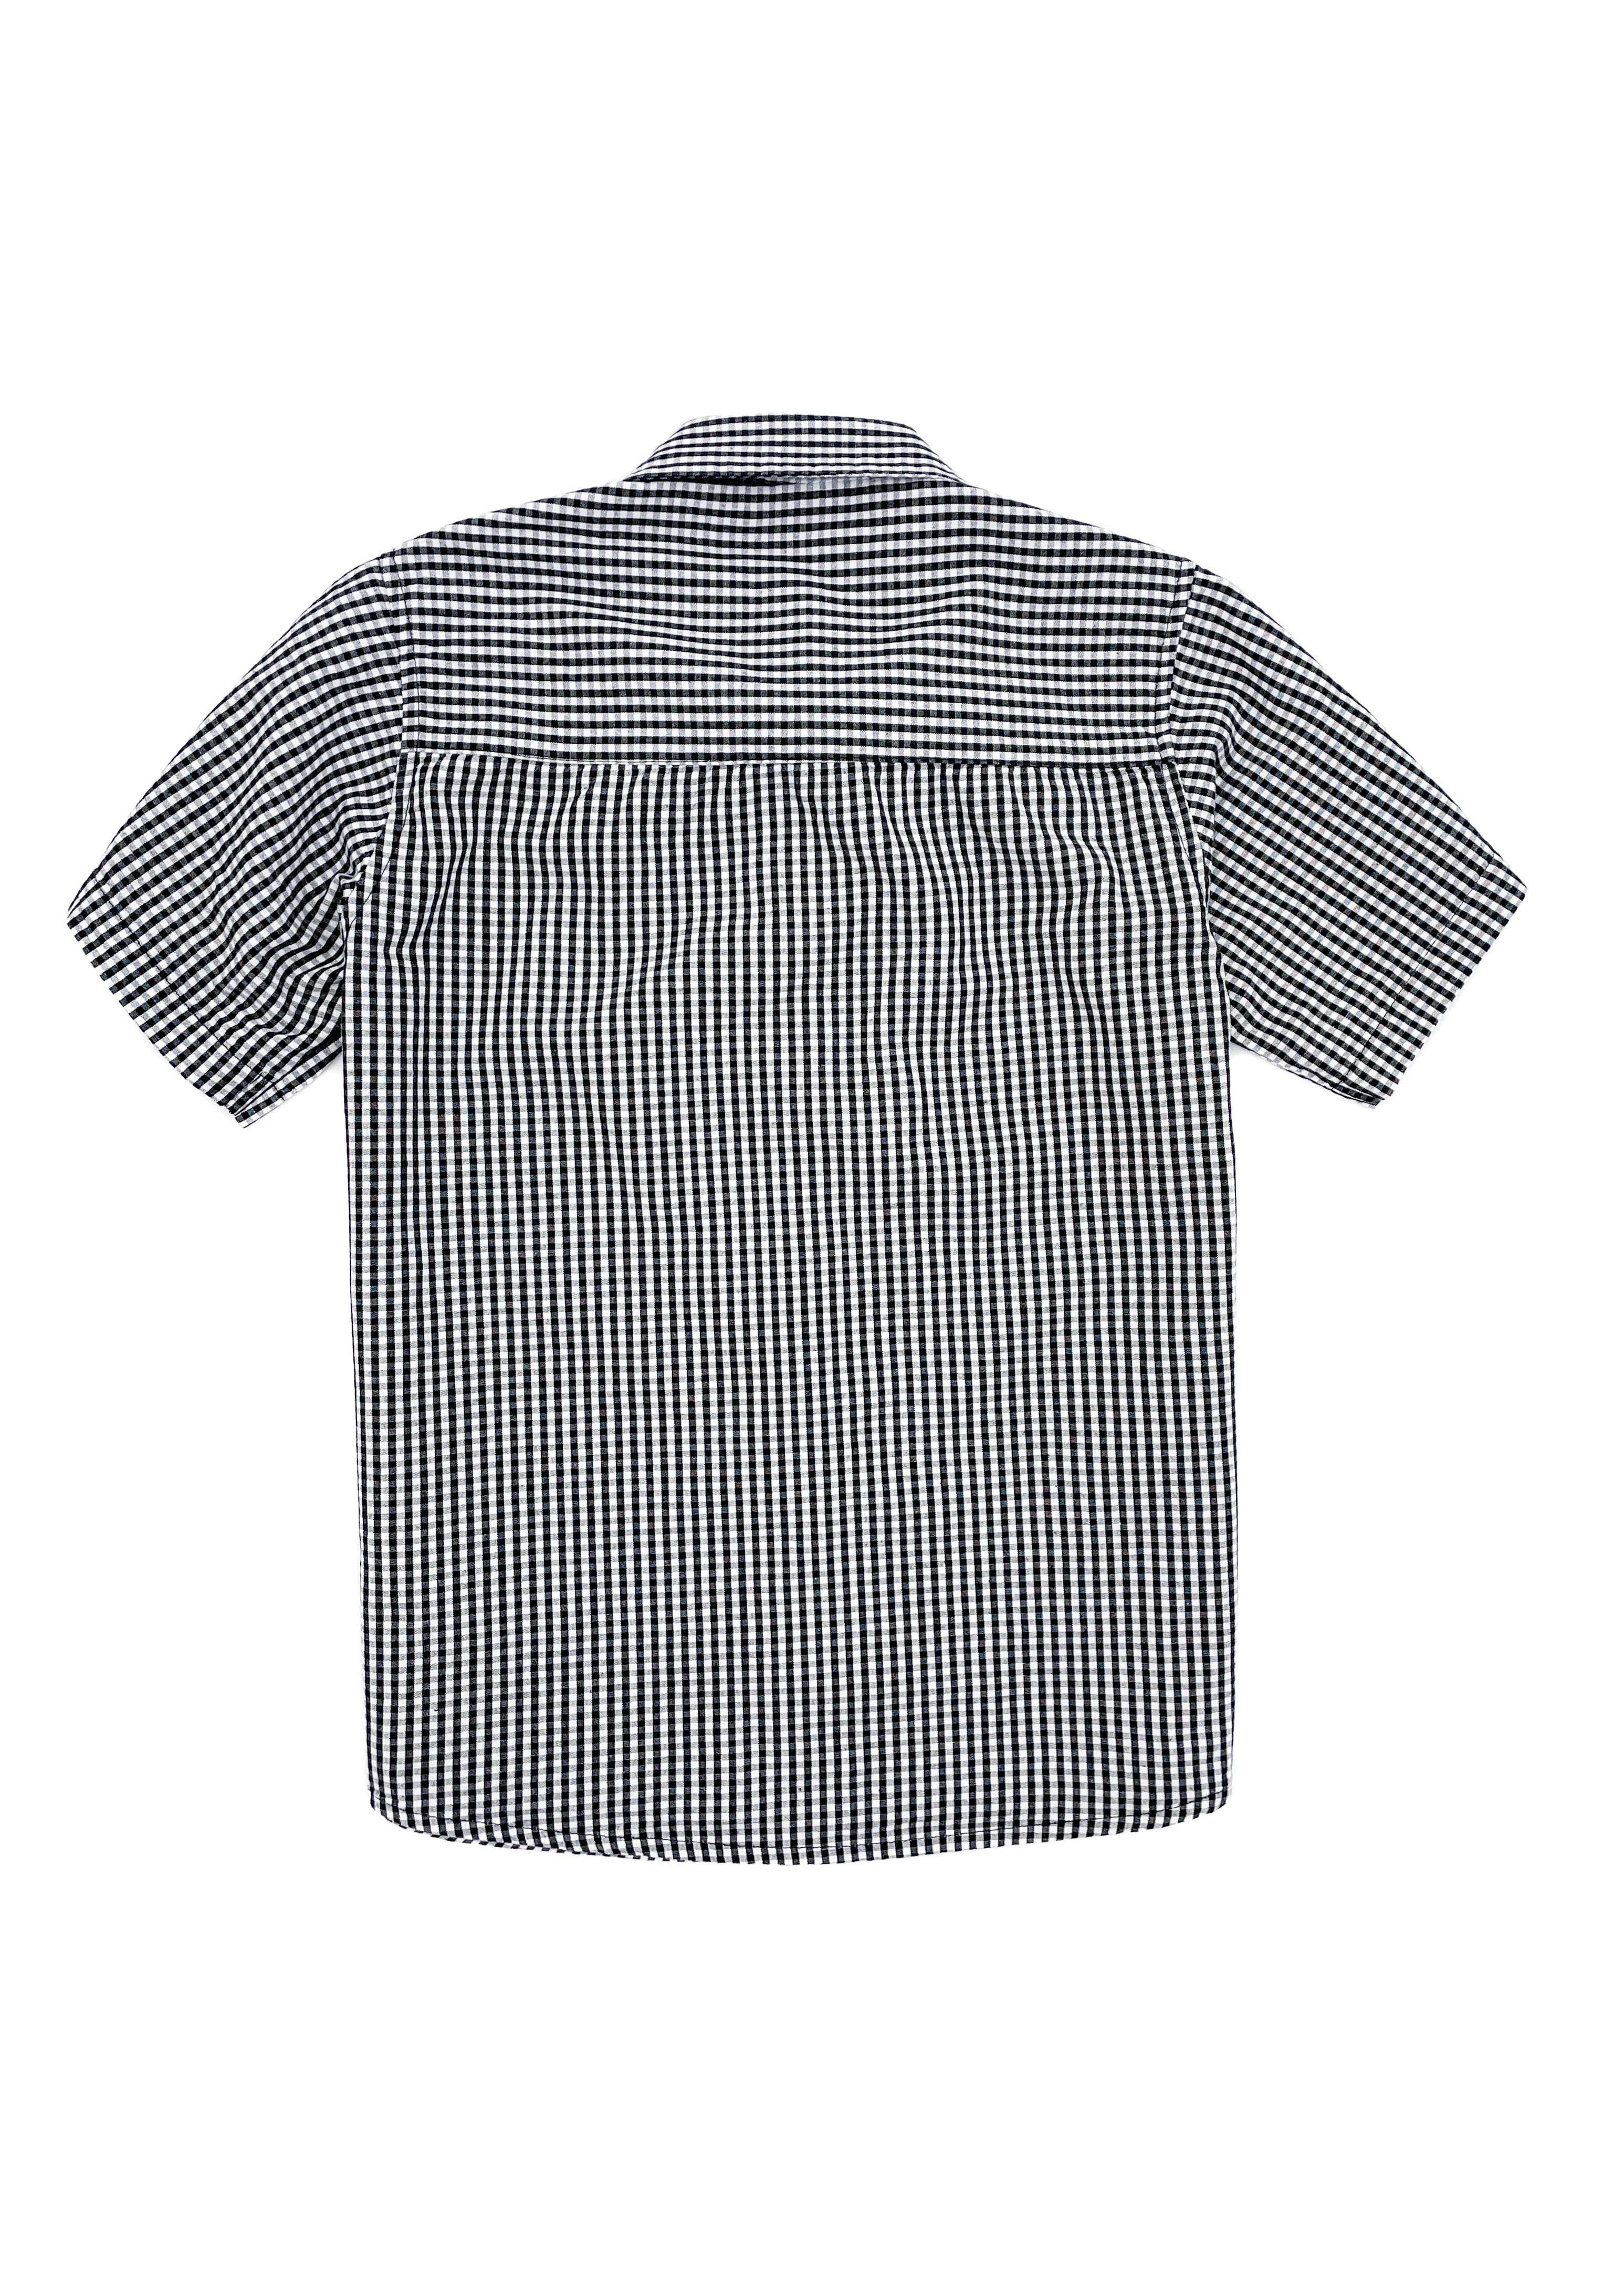 Рубашка на кнопках Minoti для мальчика 8-9 лет, 128/134 см